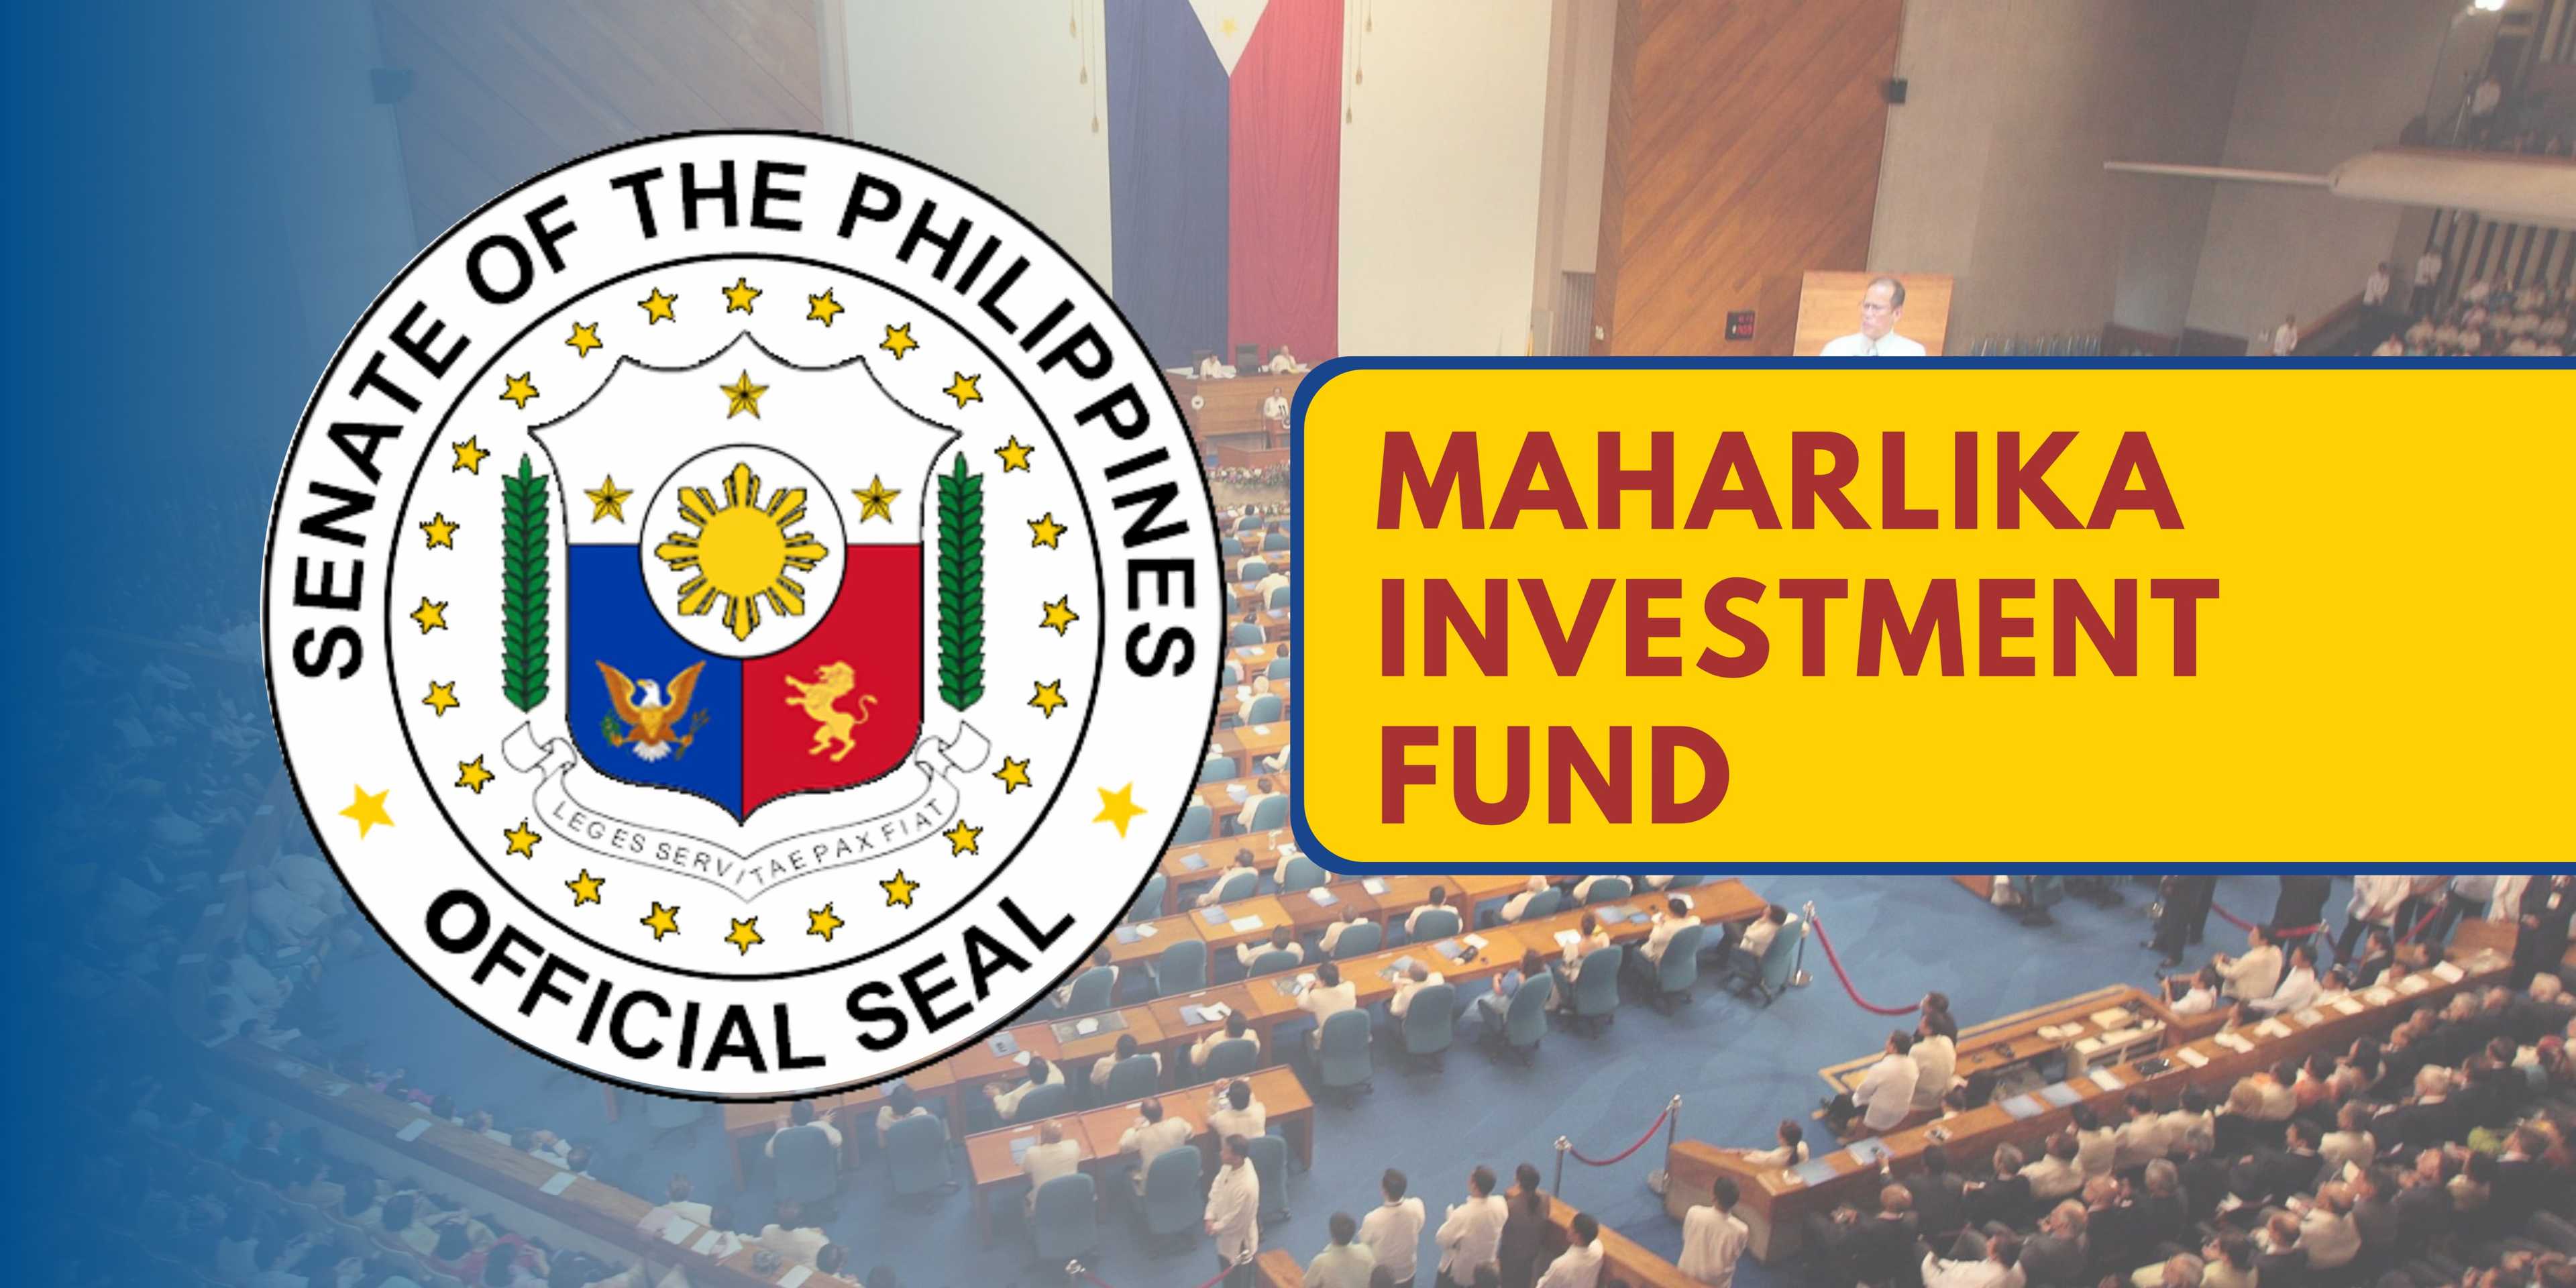 Senate still doubts Maharlika Investment Fund bill